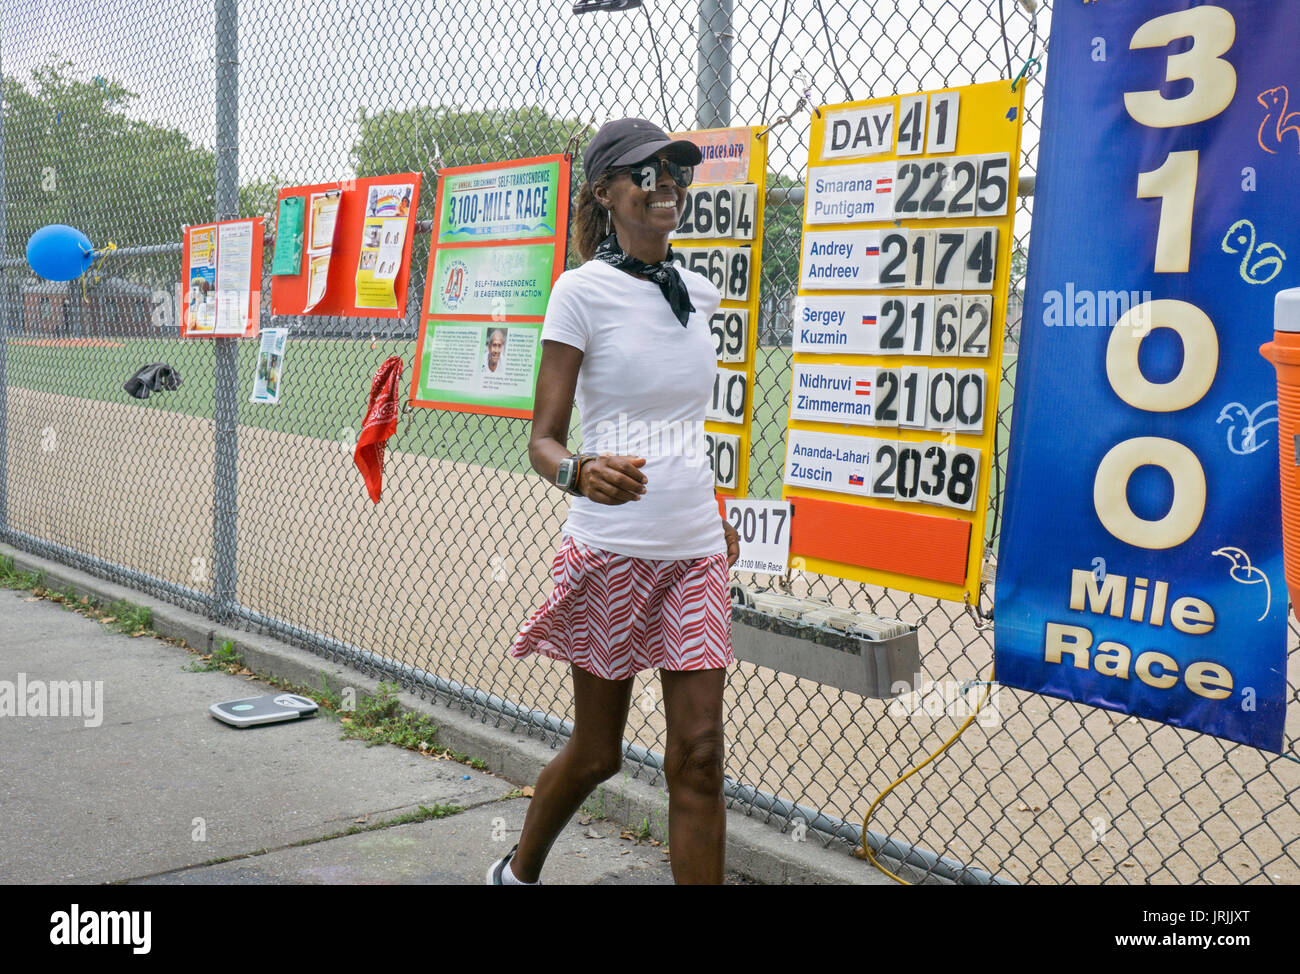 Ultra Marathon Walker, Rekordhalter & Guiness Buch der Rekorde Athlet Yolanda Halter die Teilnahme an der jährlichen 51 Tag 3100 km Rennen in Queens, NY. Stockfoto